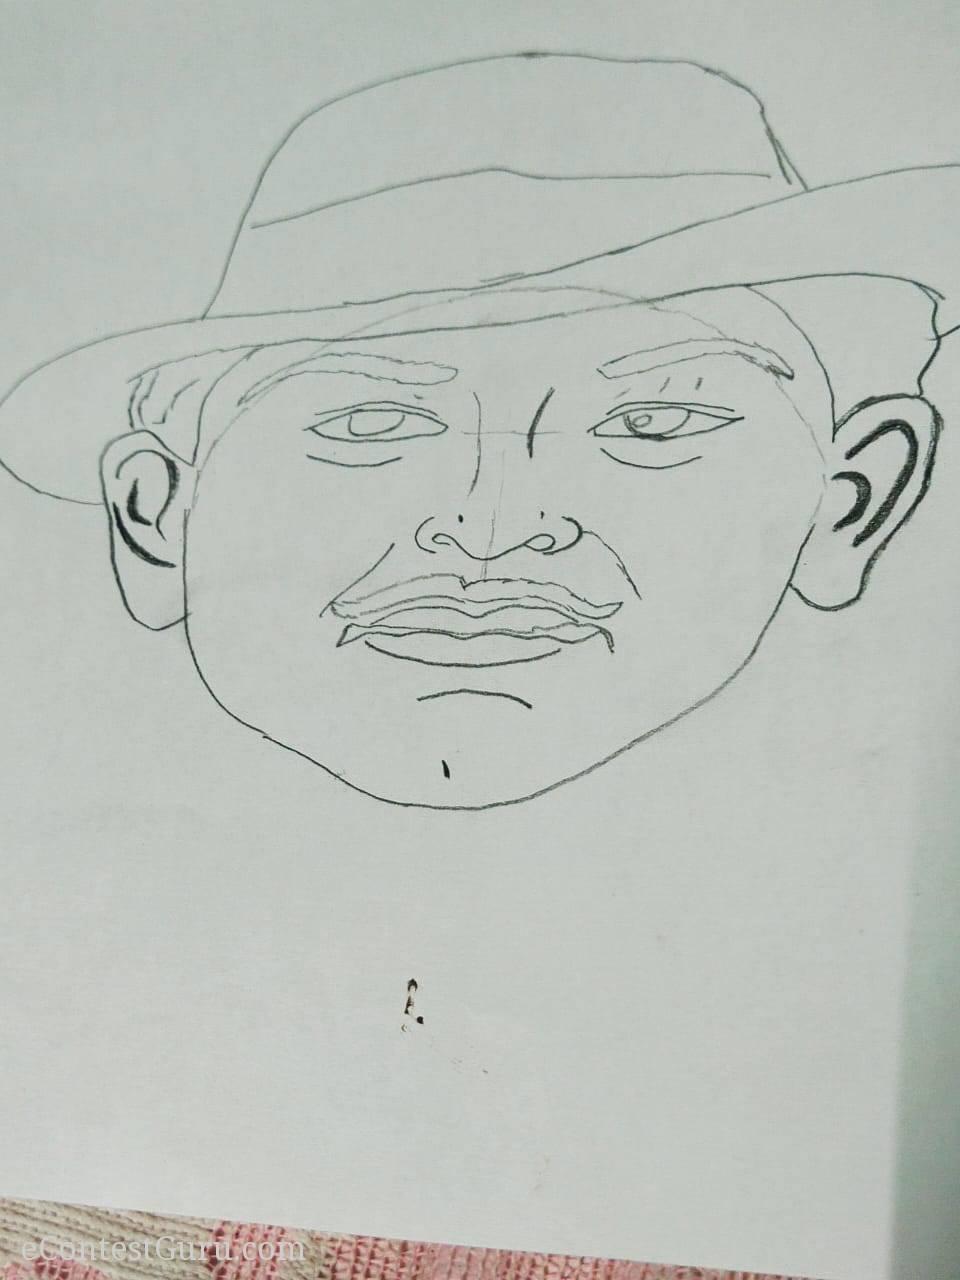 Bhagat Singh. pencil sketch.